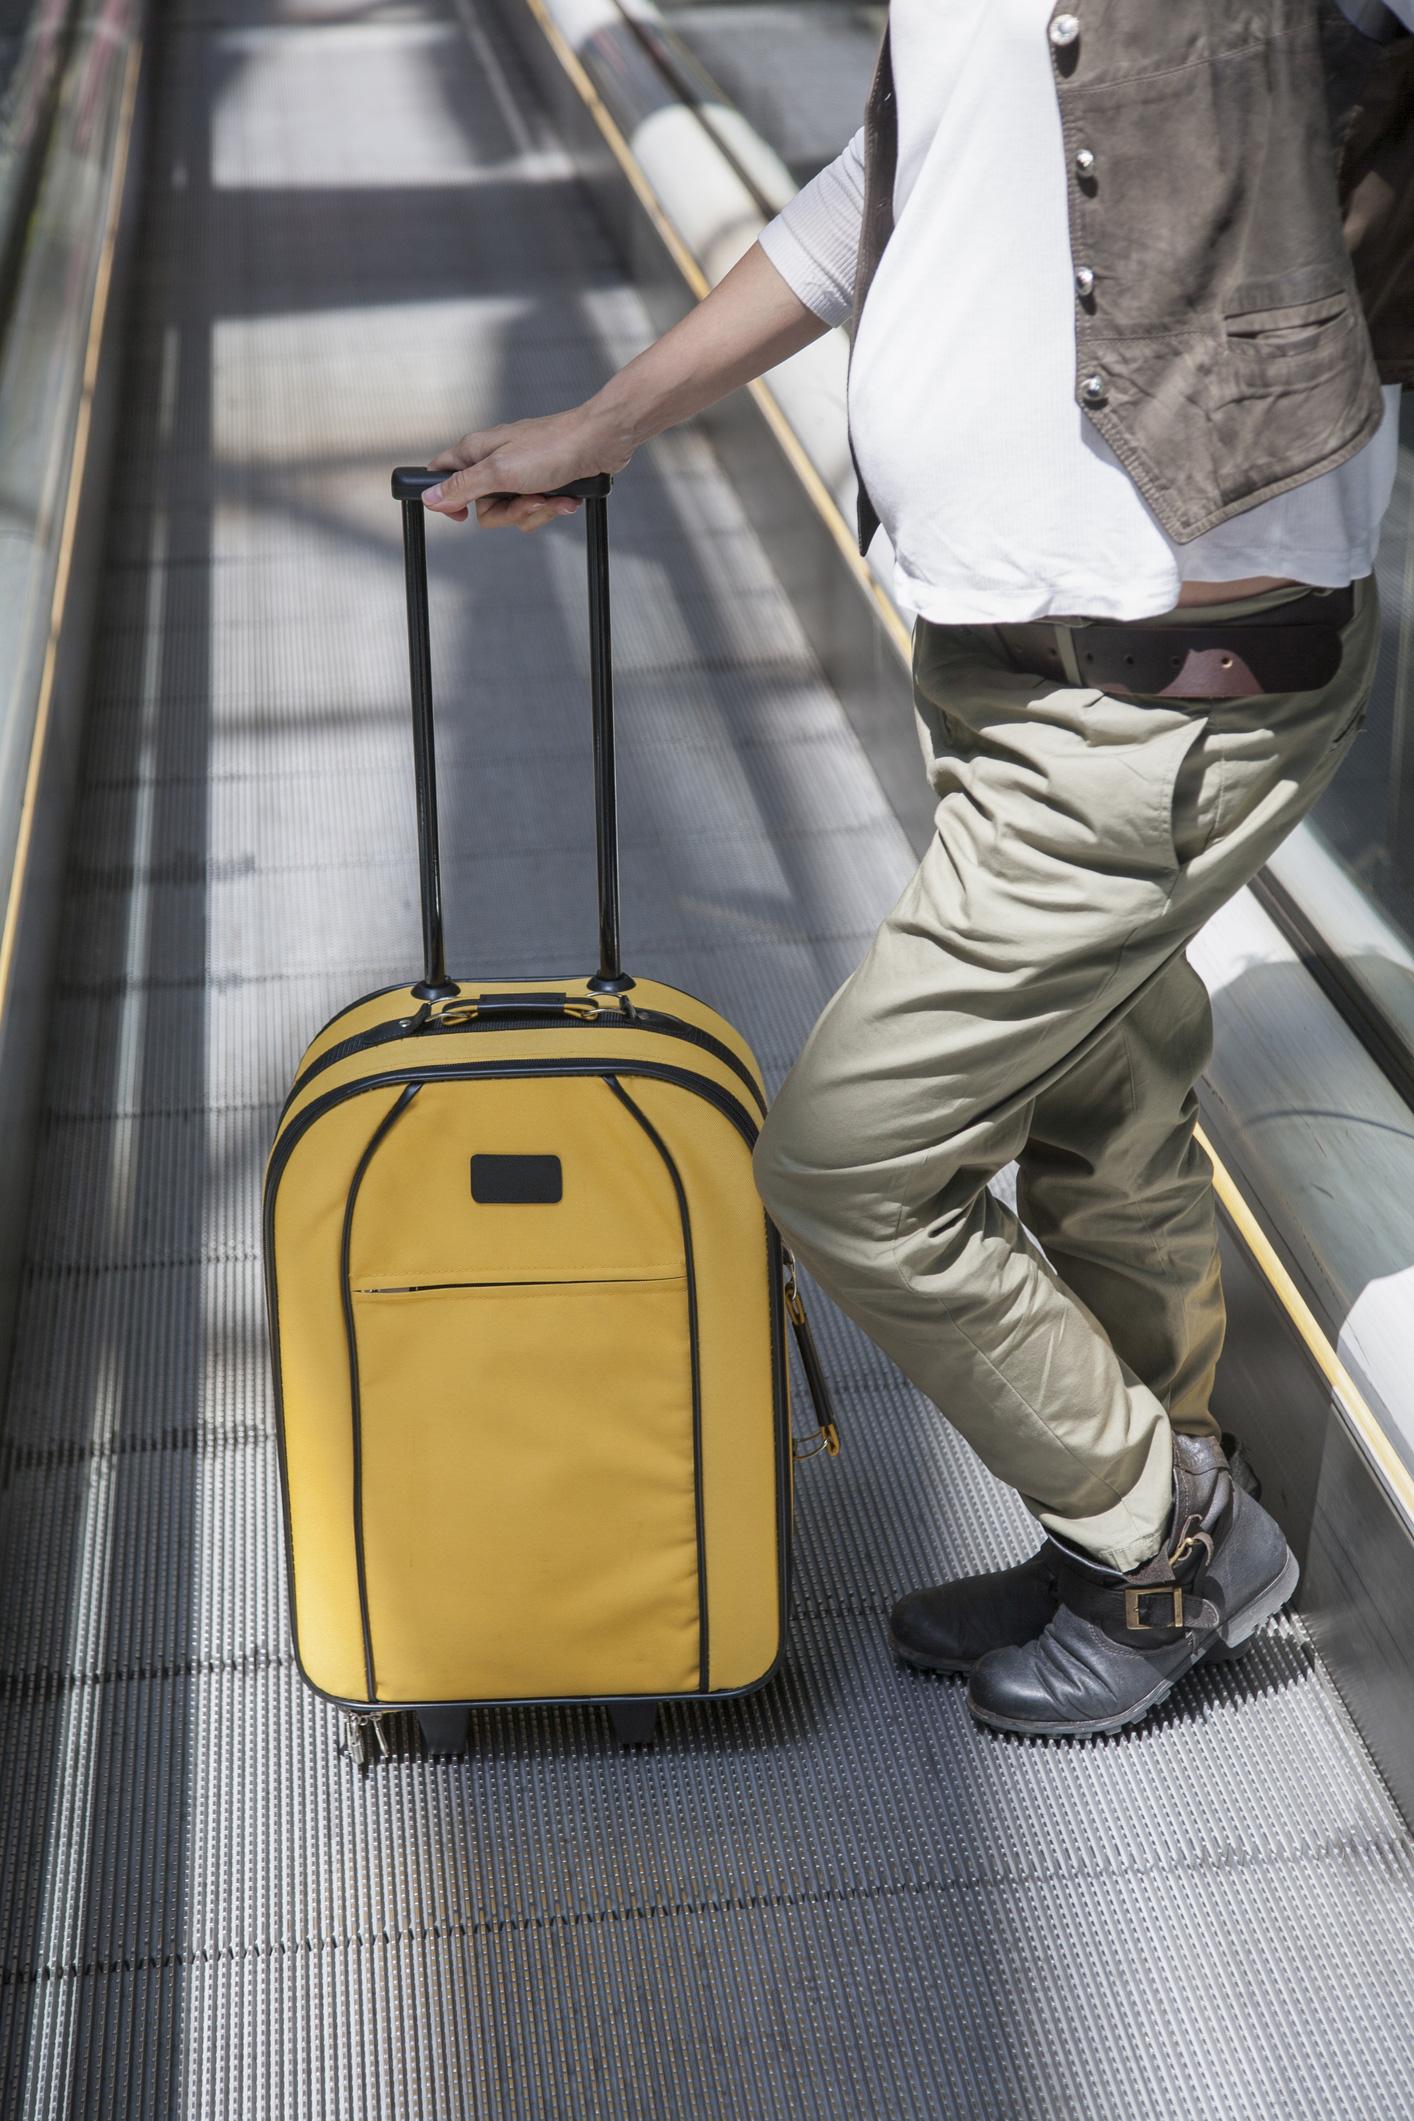 Flyger du med handbagage hos Ryanair kan du tvingas lämna in handbagaget.